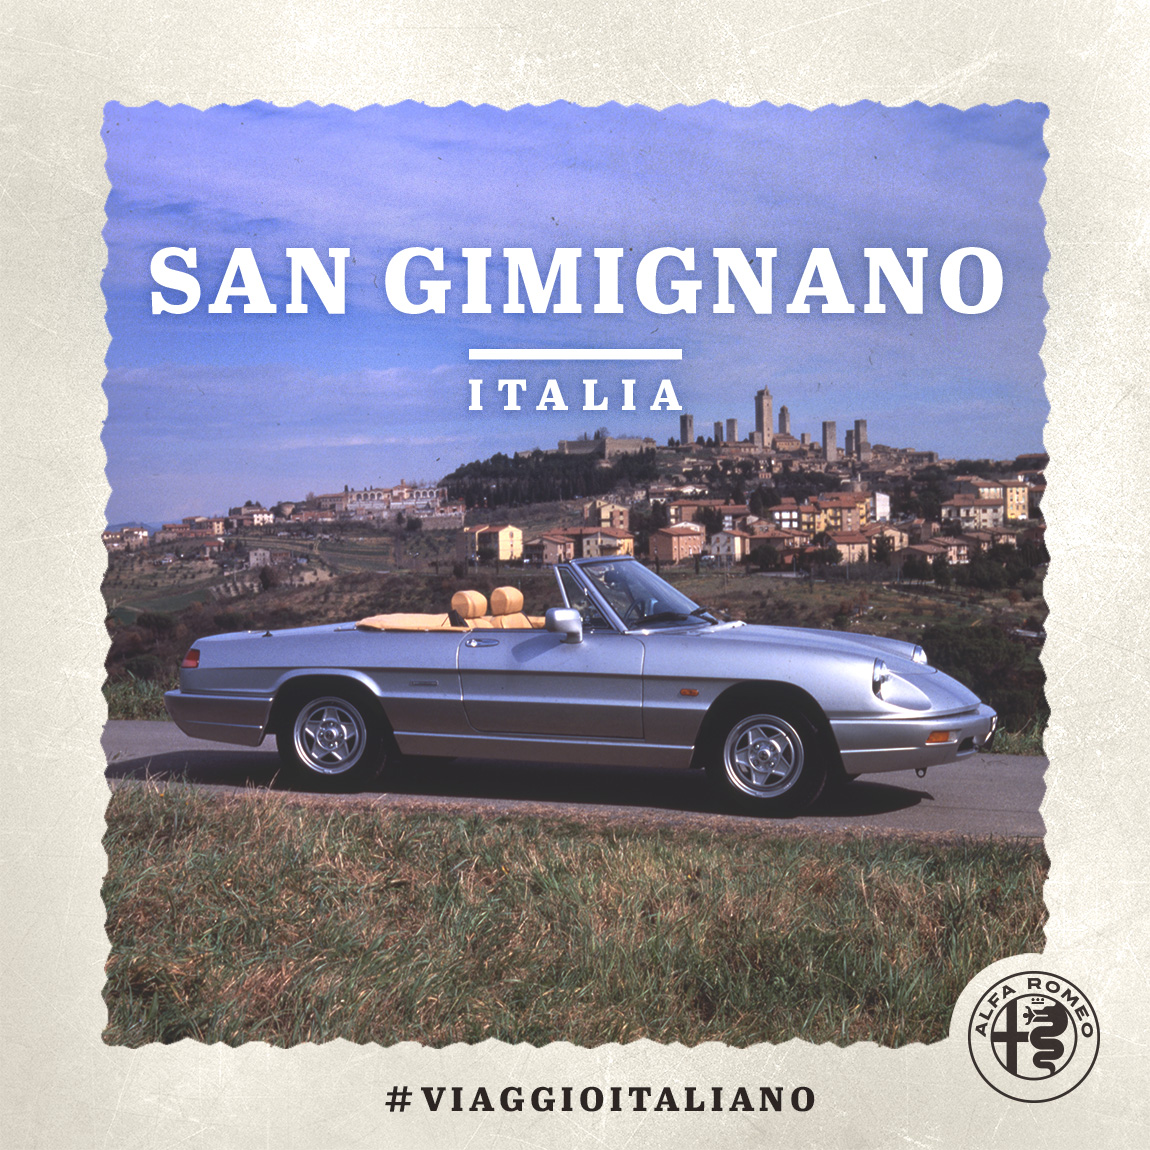 Immagine di un'auto Alfa Romeo a San Gimignano